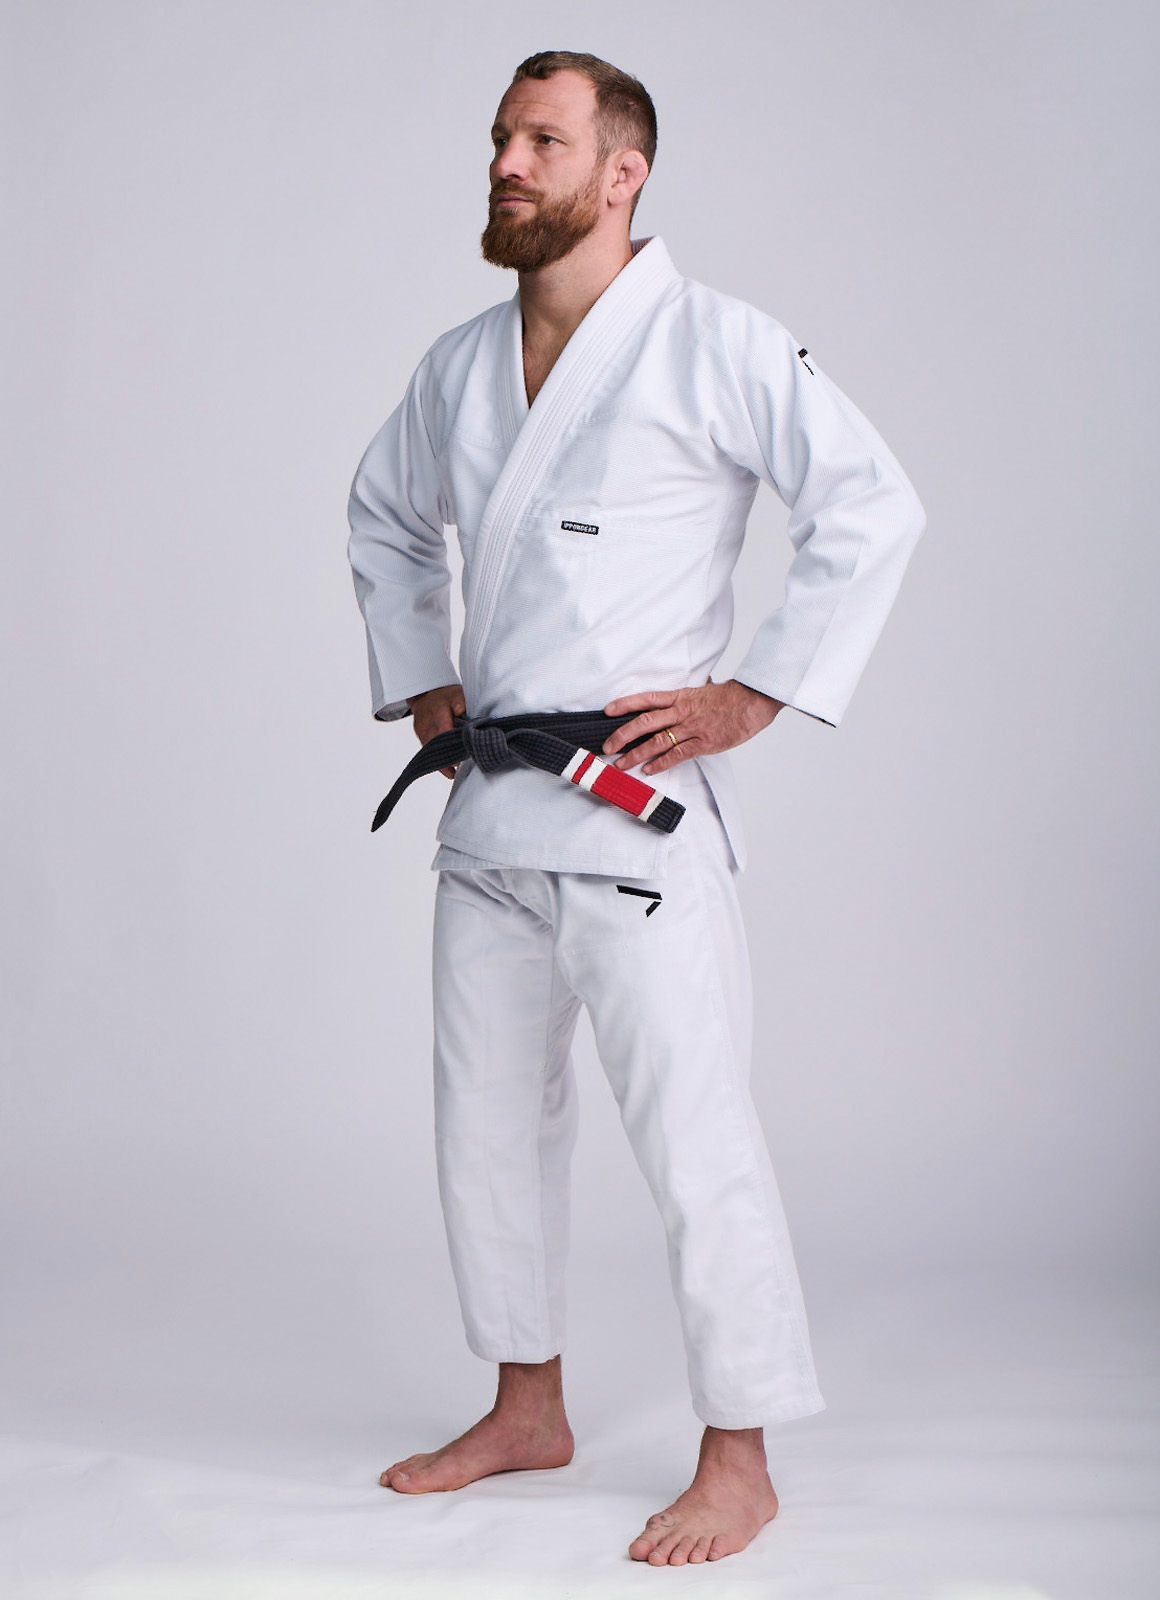 Vysoce kvalitní BJJ kimona pro soutěže i trénink BJJ zápasníků.